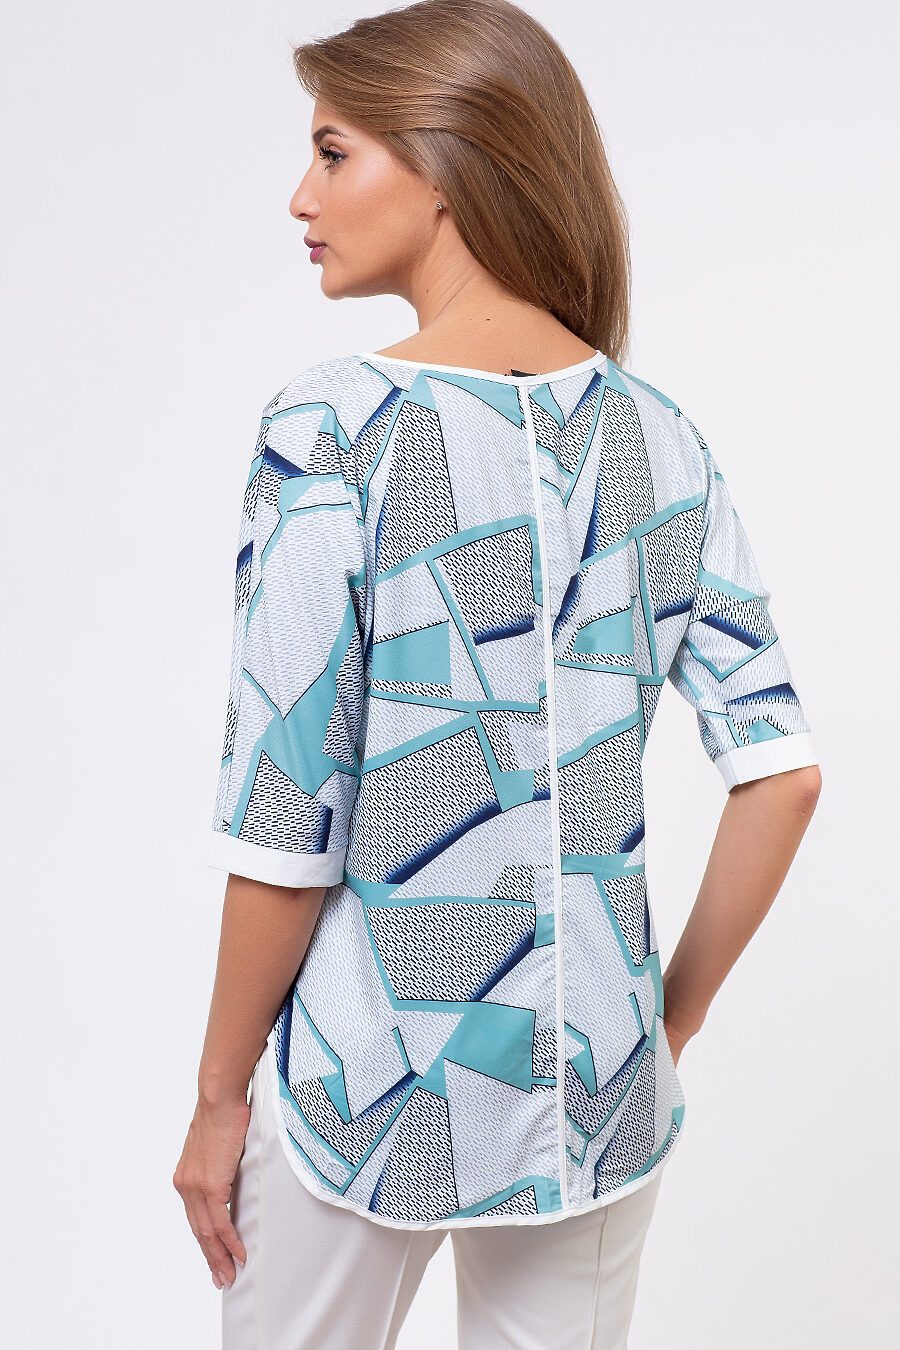 Блуза TUTACHI (127313), купить в Moyo.moda